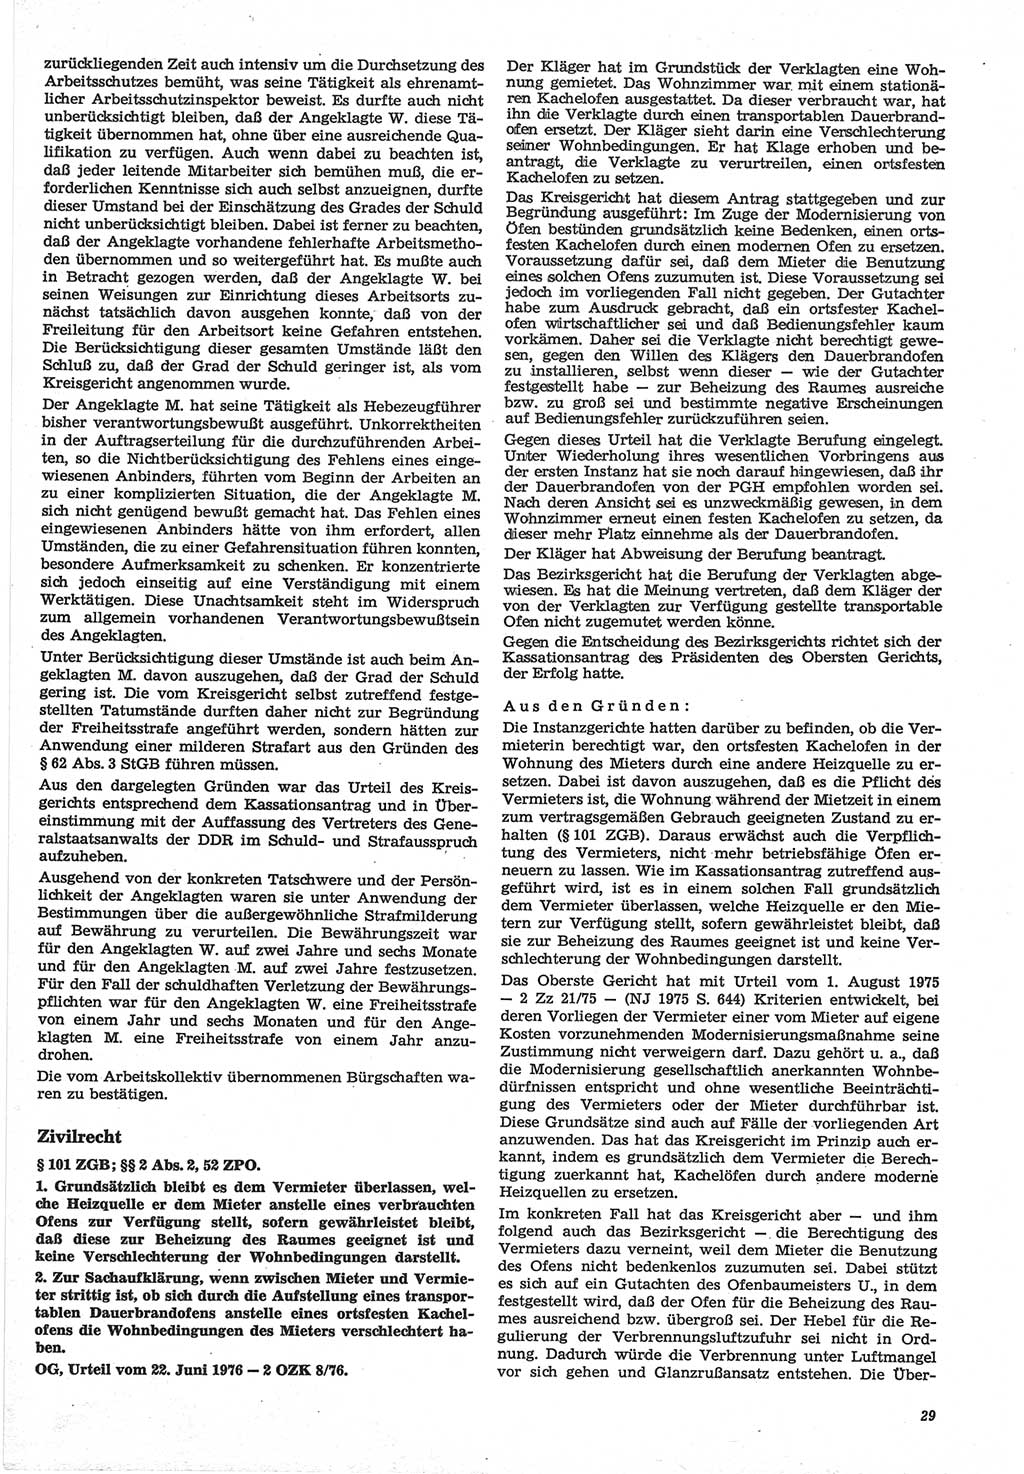 Neue Justiz (NJ), Zeitschrift für Recht und Rechtswissenschaft-Zeitschrift, sozialistisches Recht und Gesetzlichkeit, 31. Jahrgang 1977, Seite 29 (NJ DDR 1977, S. 29)